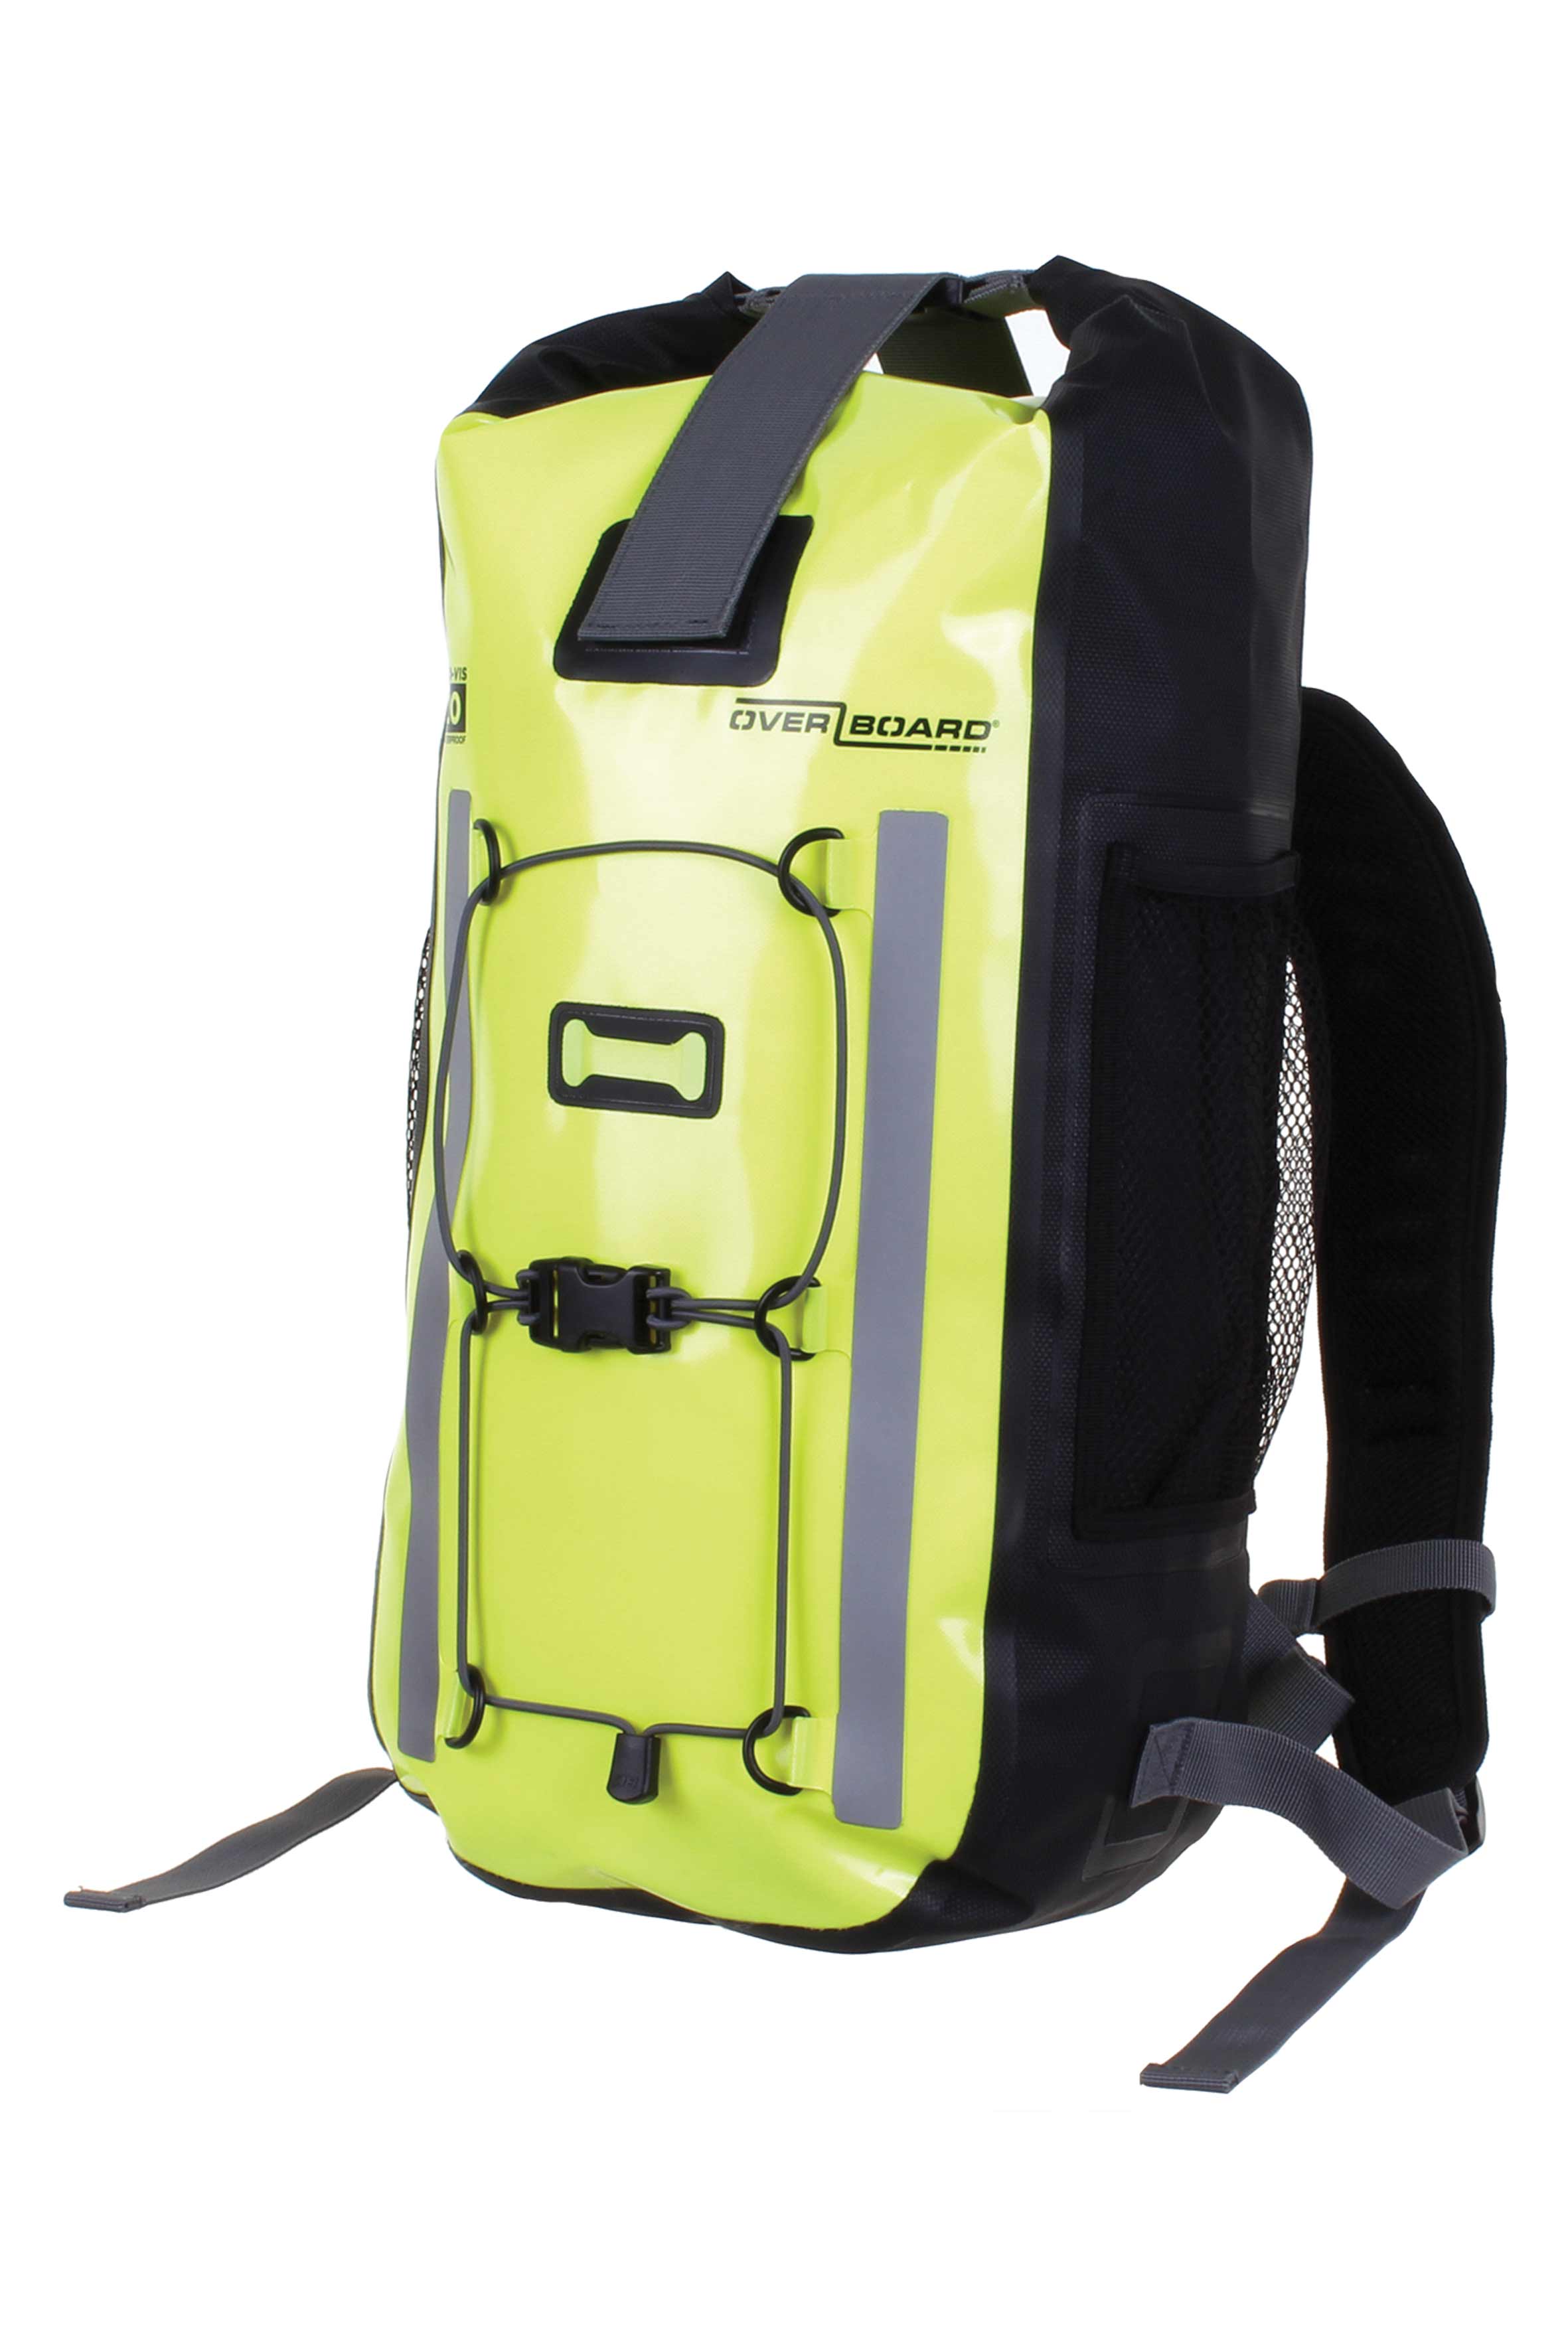 SAFEQUIP Pro-Vis 100% Waterproof Backpack, 20L, Orange/Yellow ...